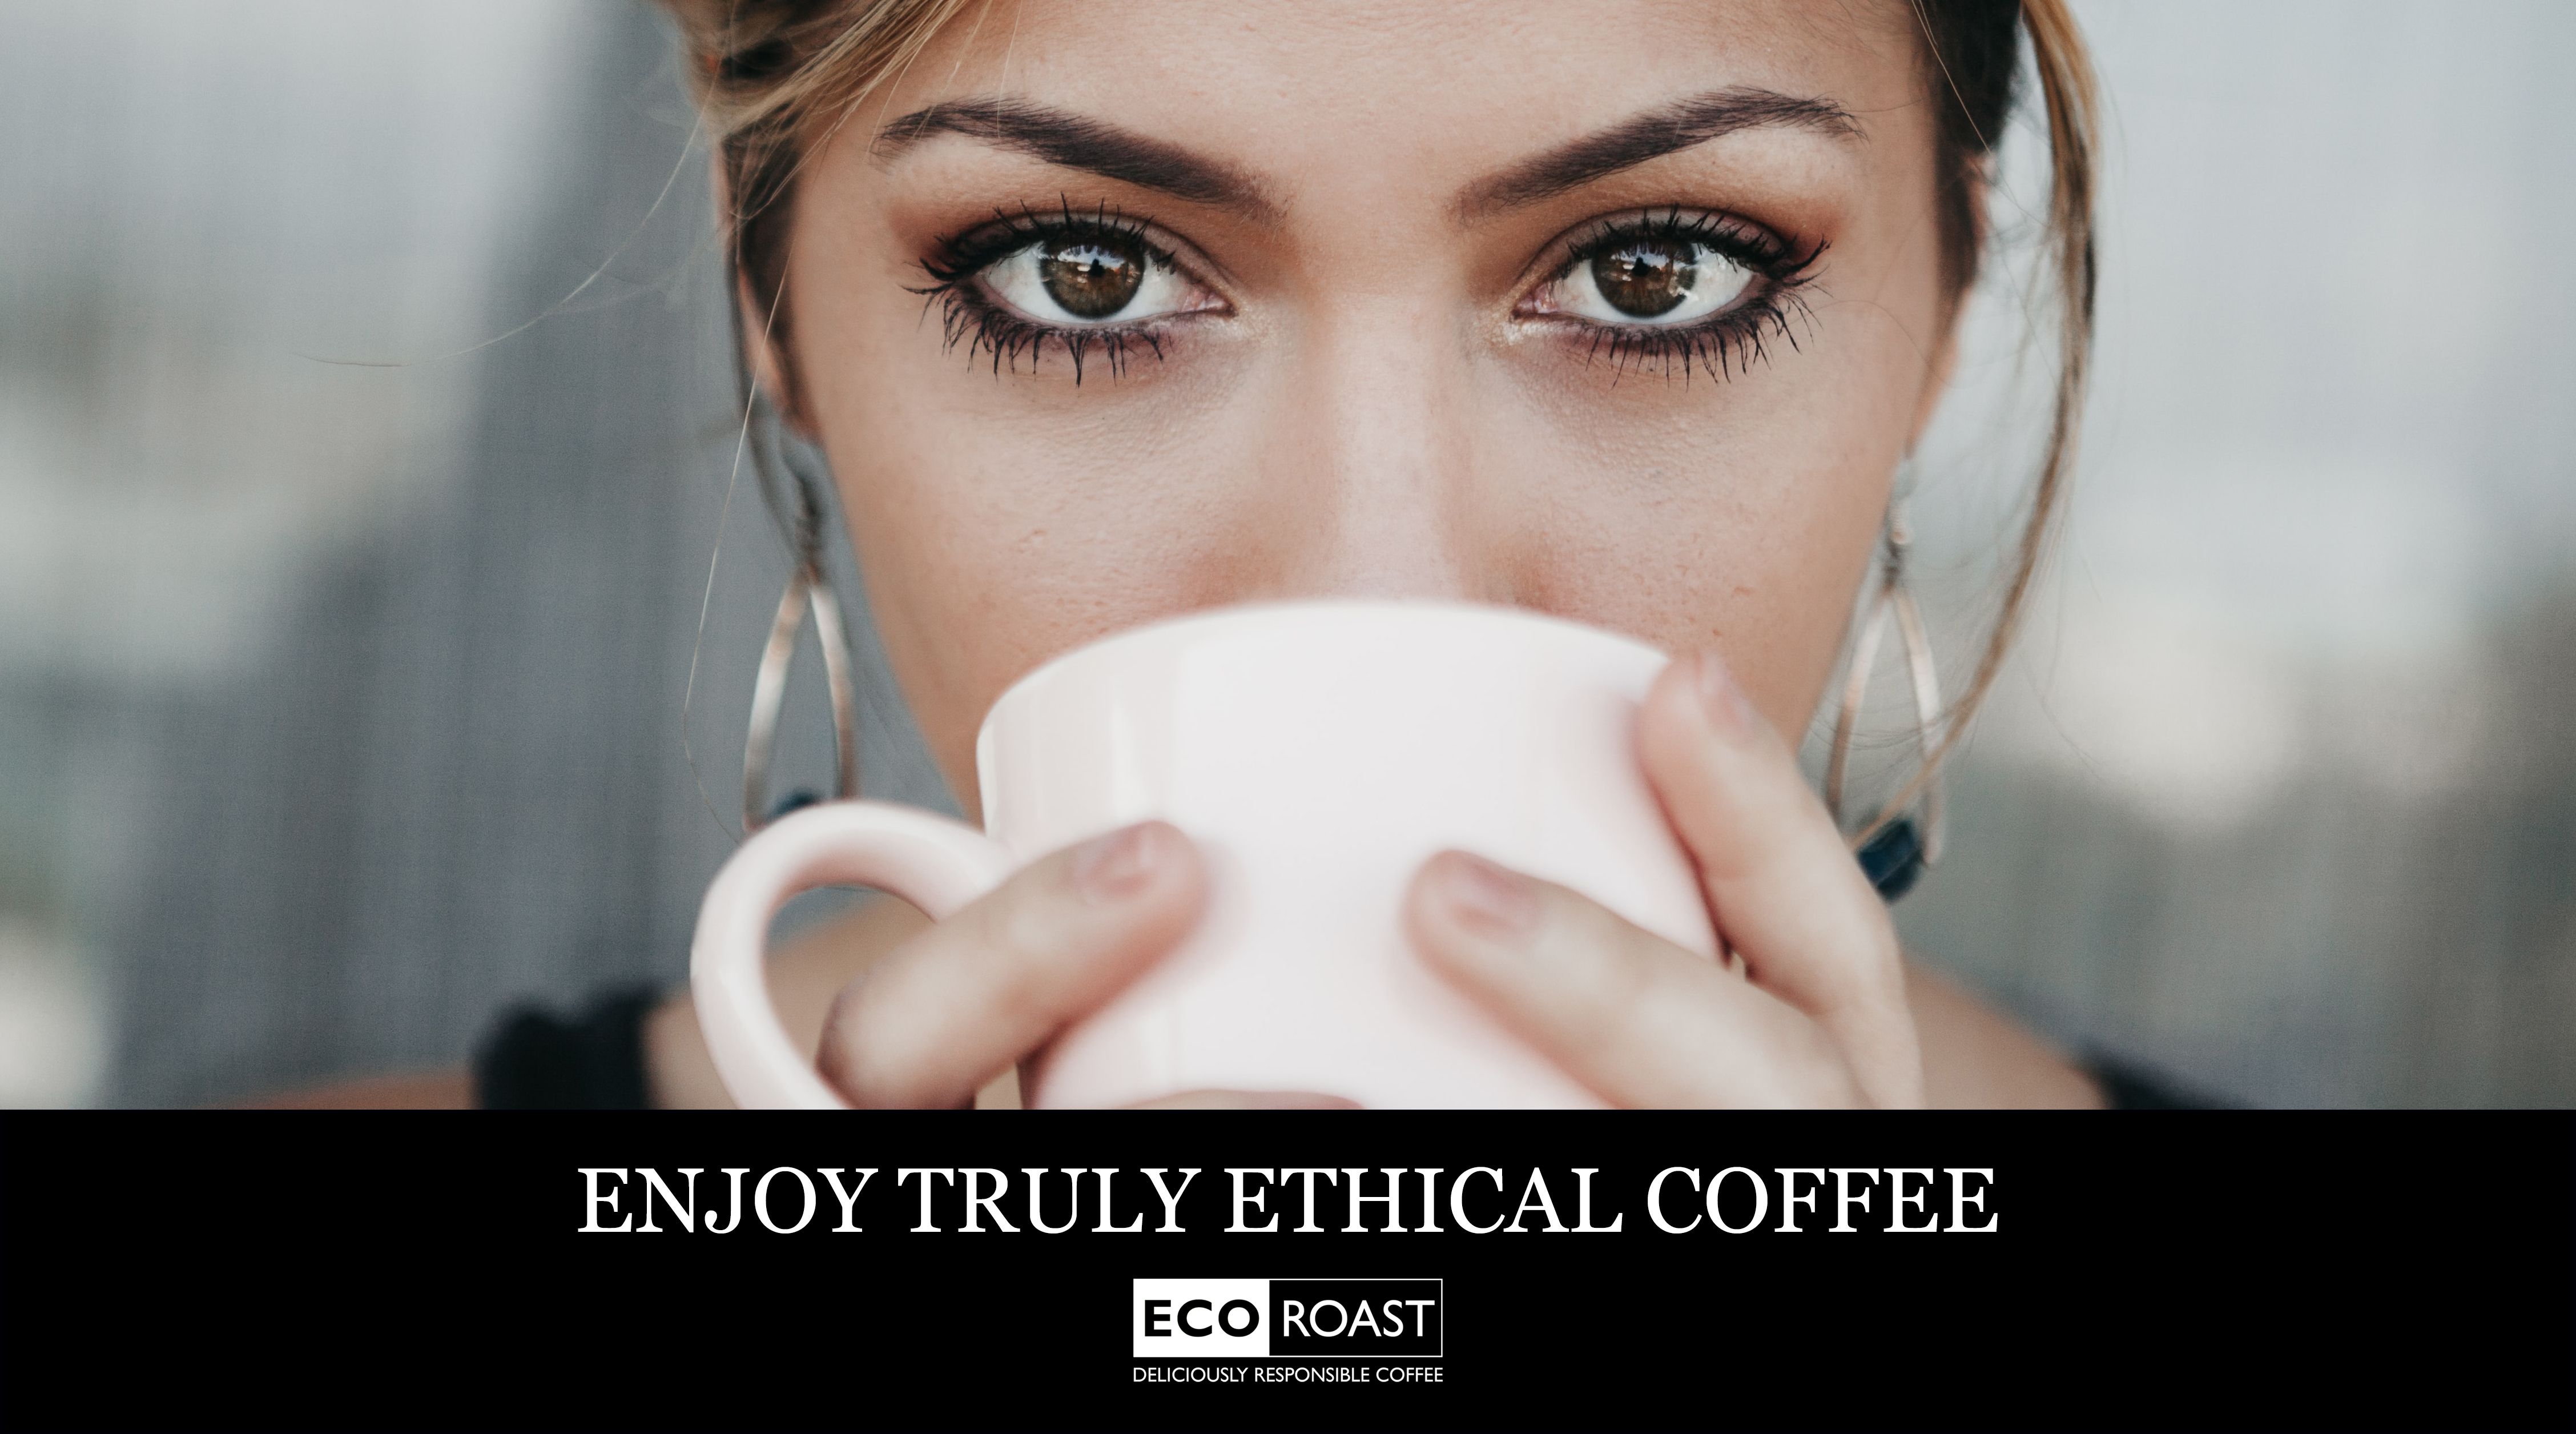 ENJOY TRULY ETHICAL COFFEE